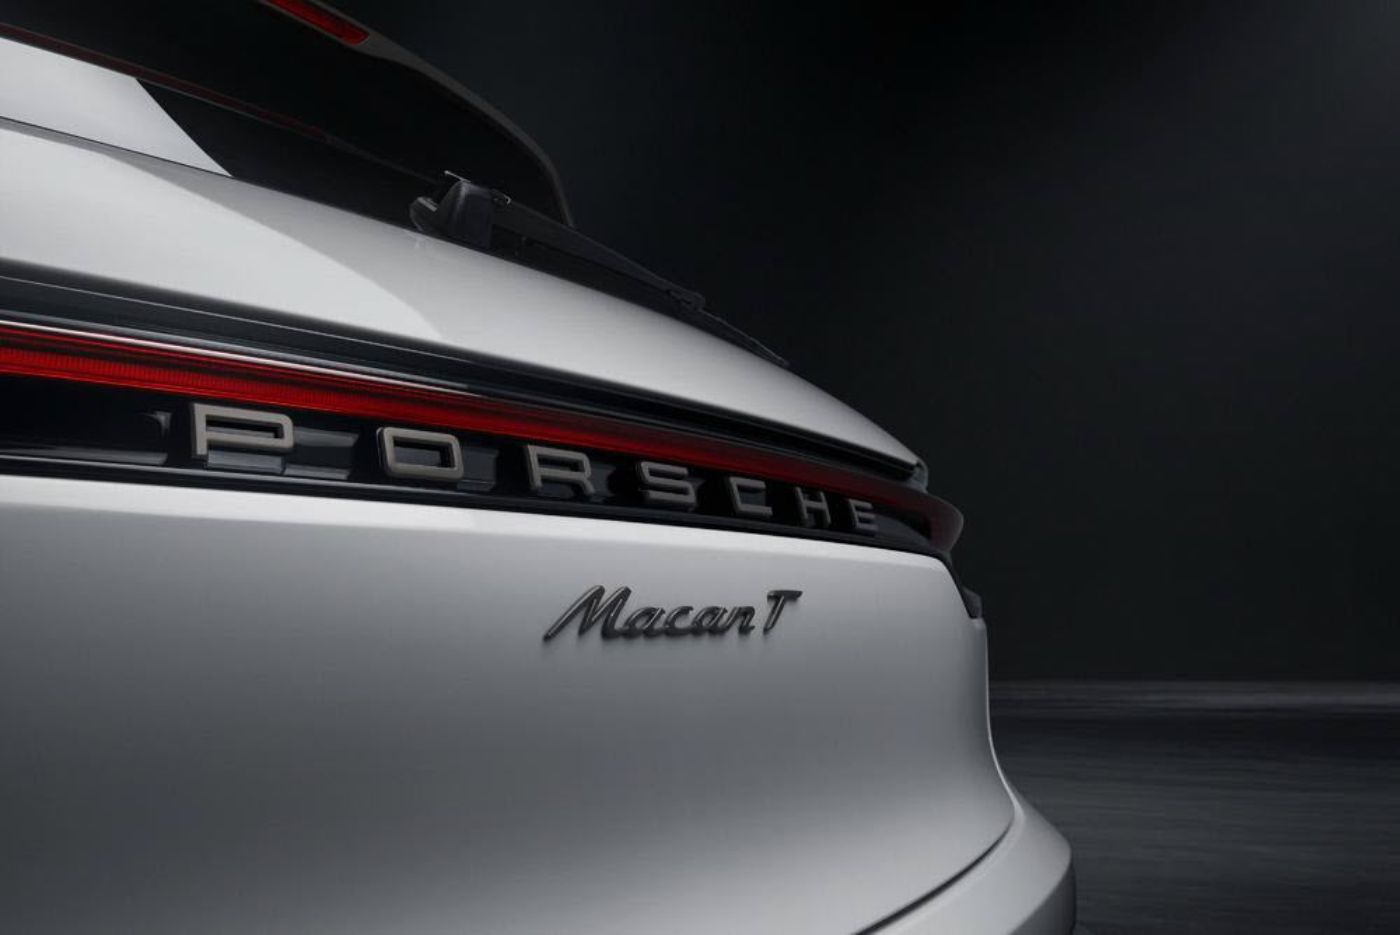 Vue arrière du nouveau Porsche Macan T